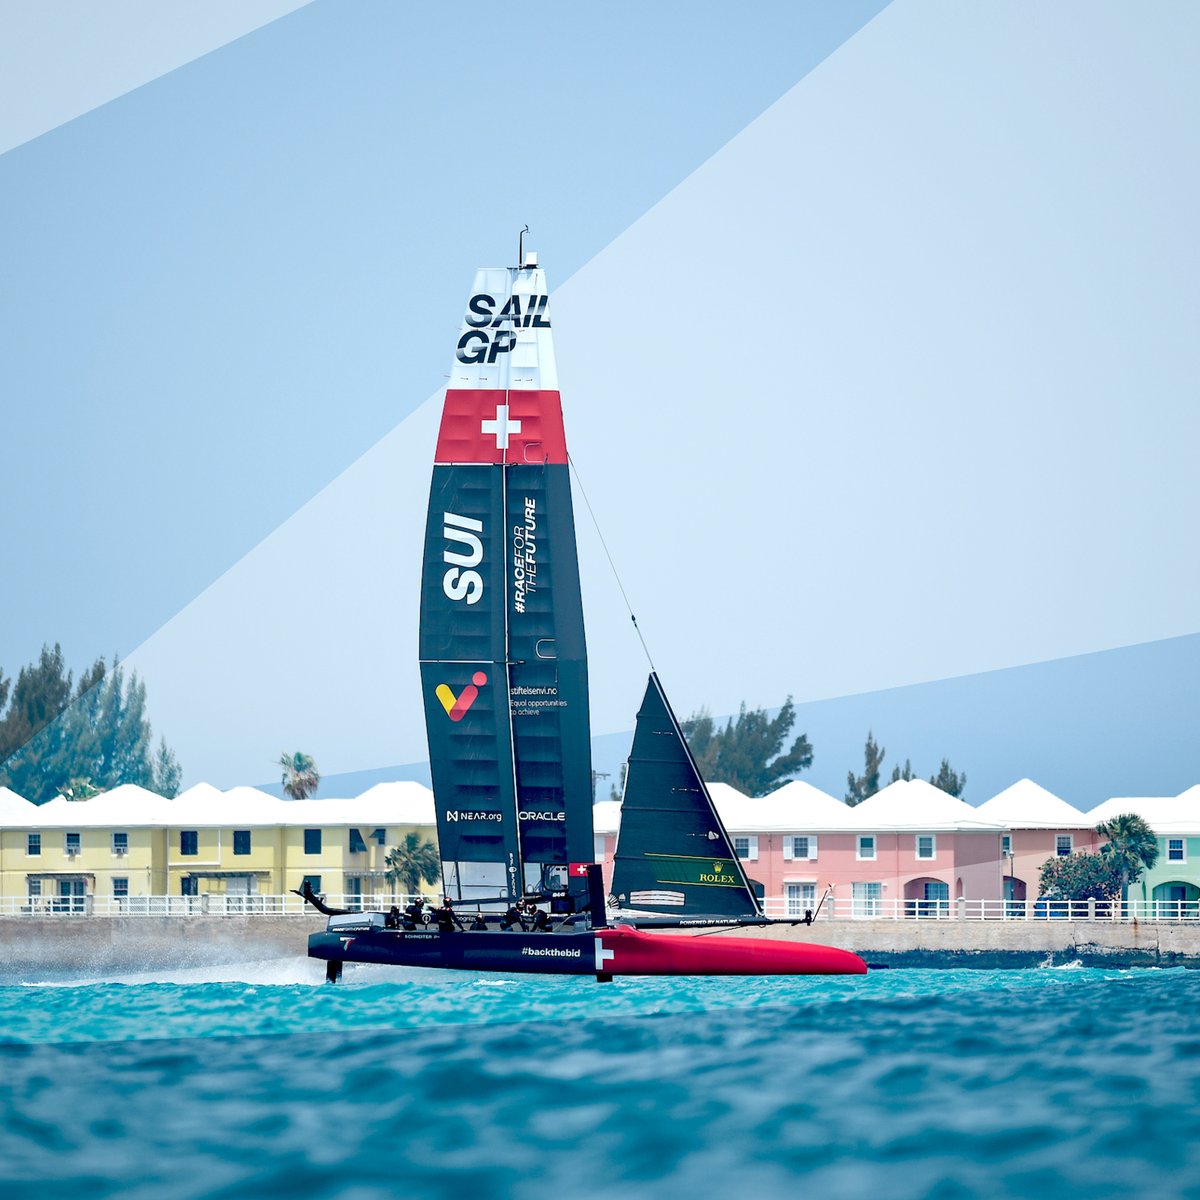 BERMUtiful Bermuda 💙🇧🇲

We'll be back in 3️⃣ weeks 🤩

#SailGPSUI #SailGP #BermudaSGP @SailGP